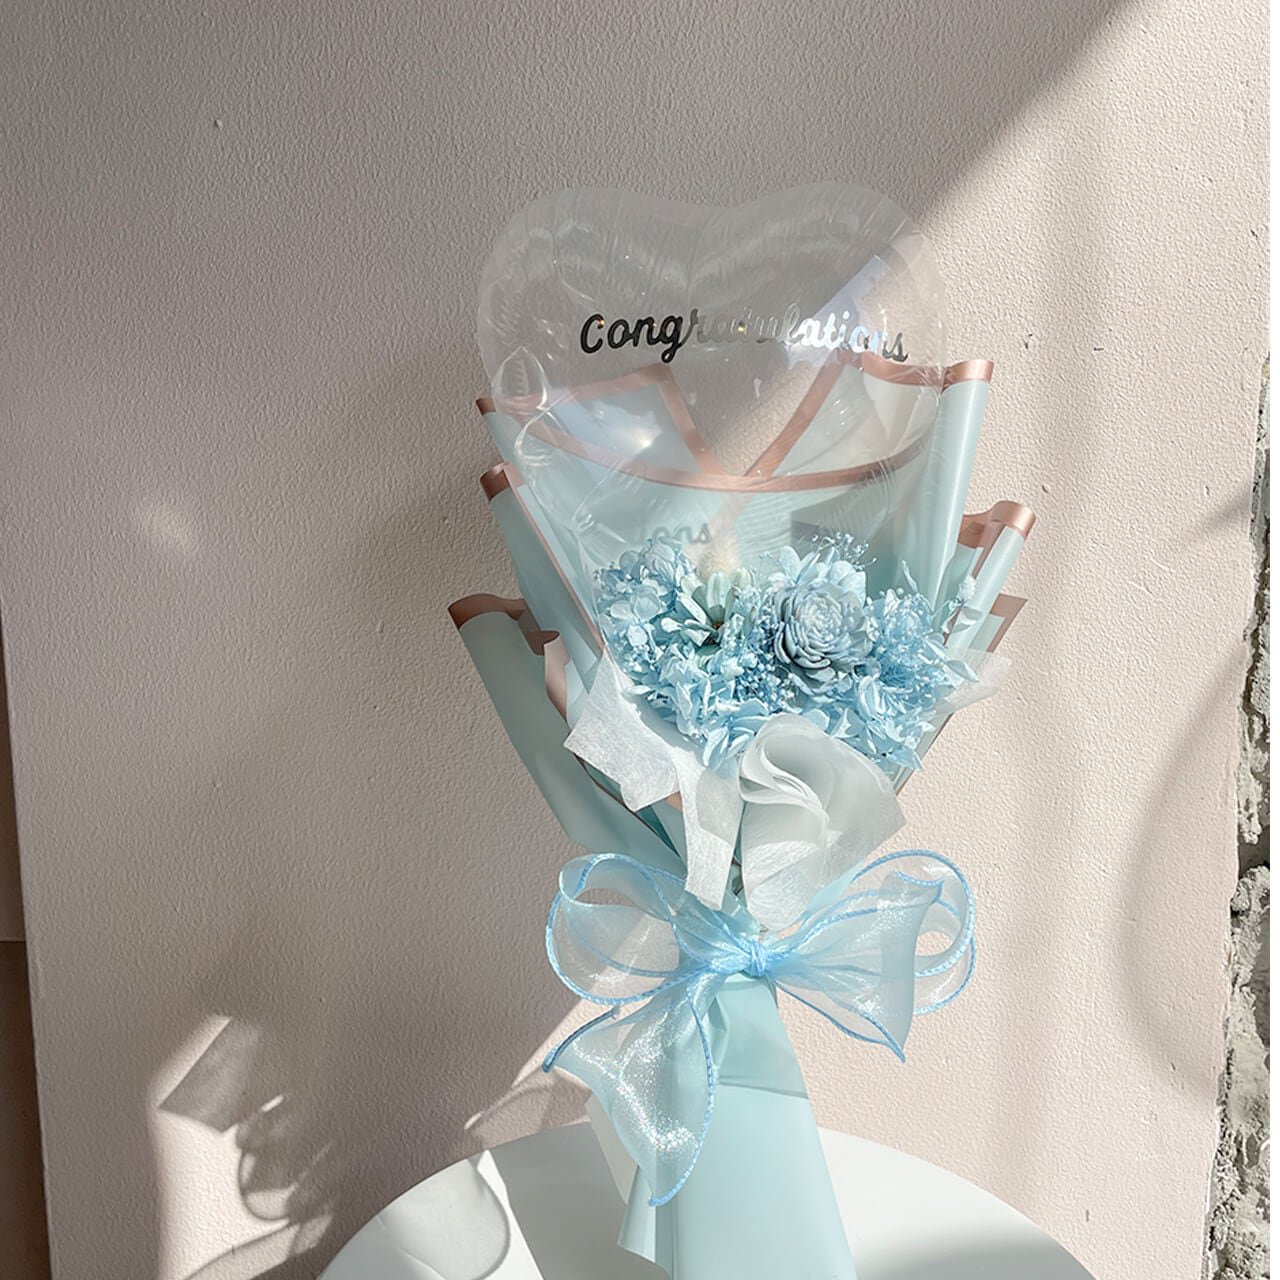 Charis Bouquet White Blue - フラワーバルーンブーケ - 各種お祝いや卒業や入学のお祝いにギフトバルーン